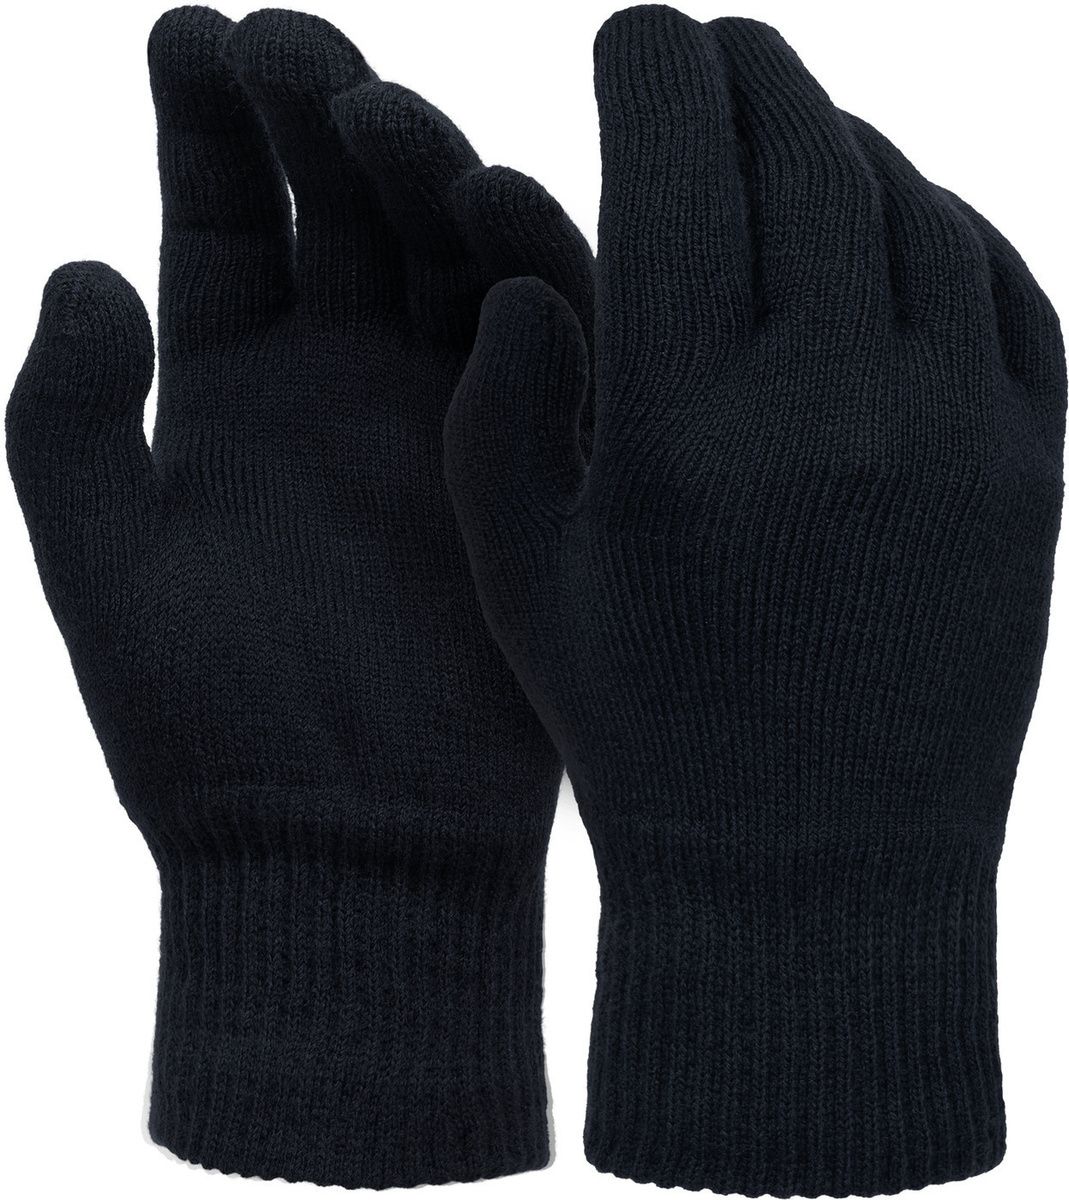 Перчатки СИБИРСКИЕ, одинарные, черные, (5.1.1-10.1.0.201-202) – 1